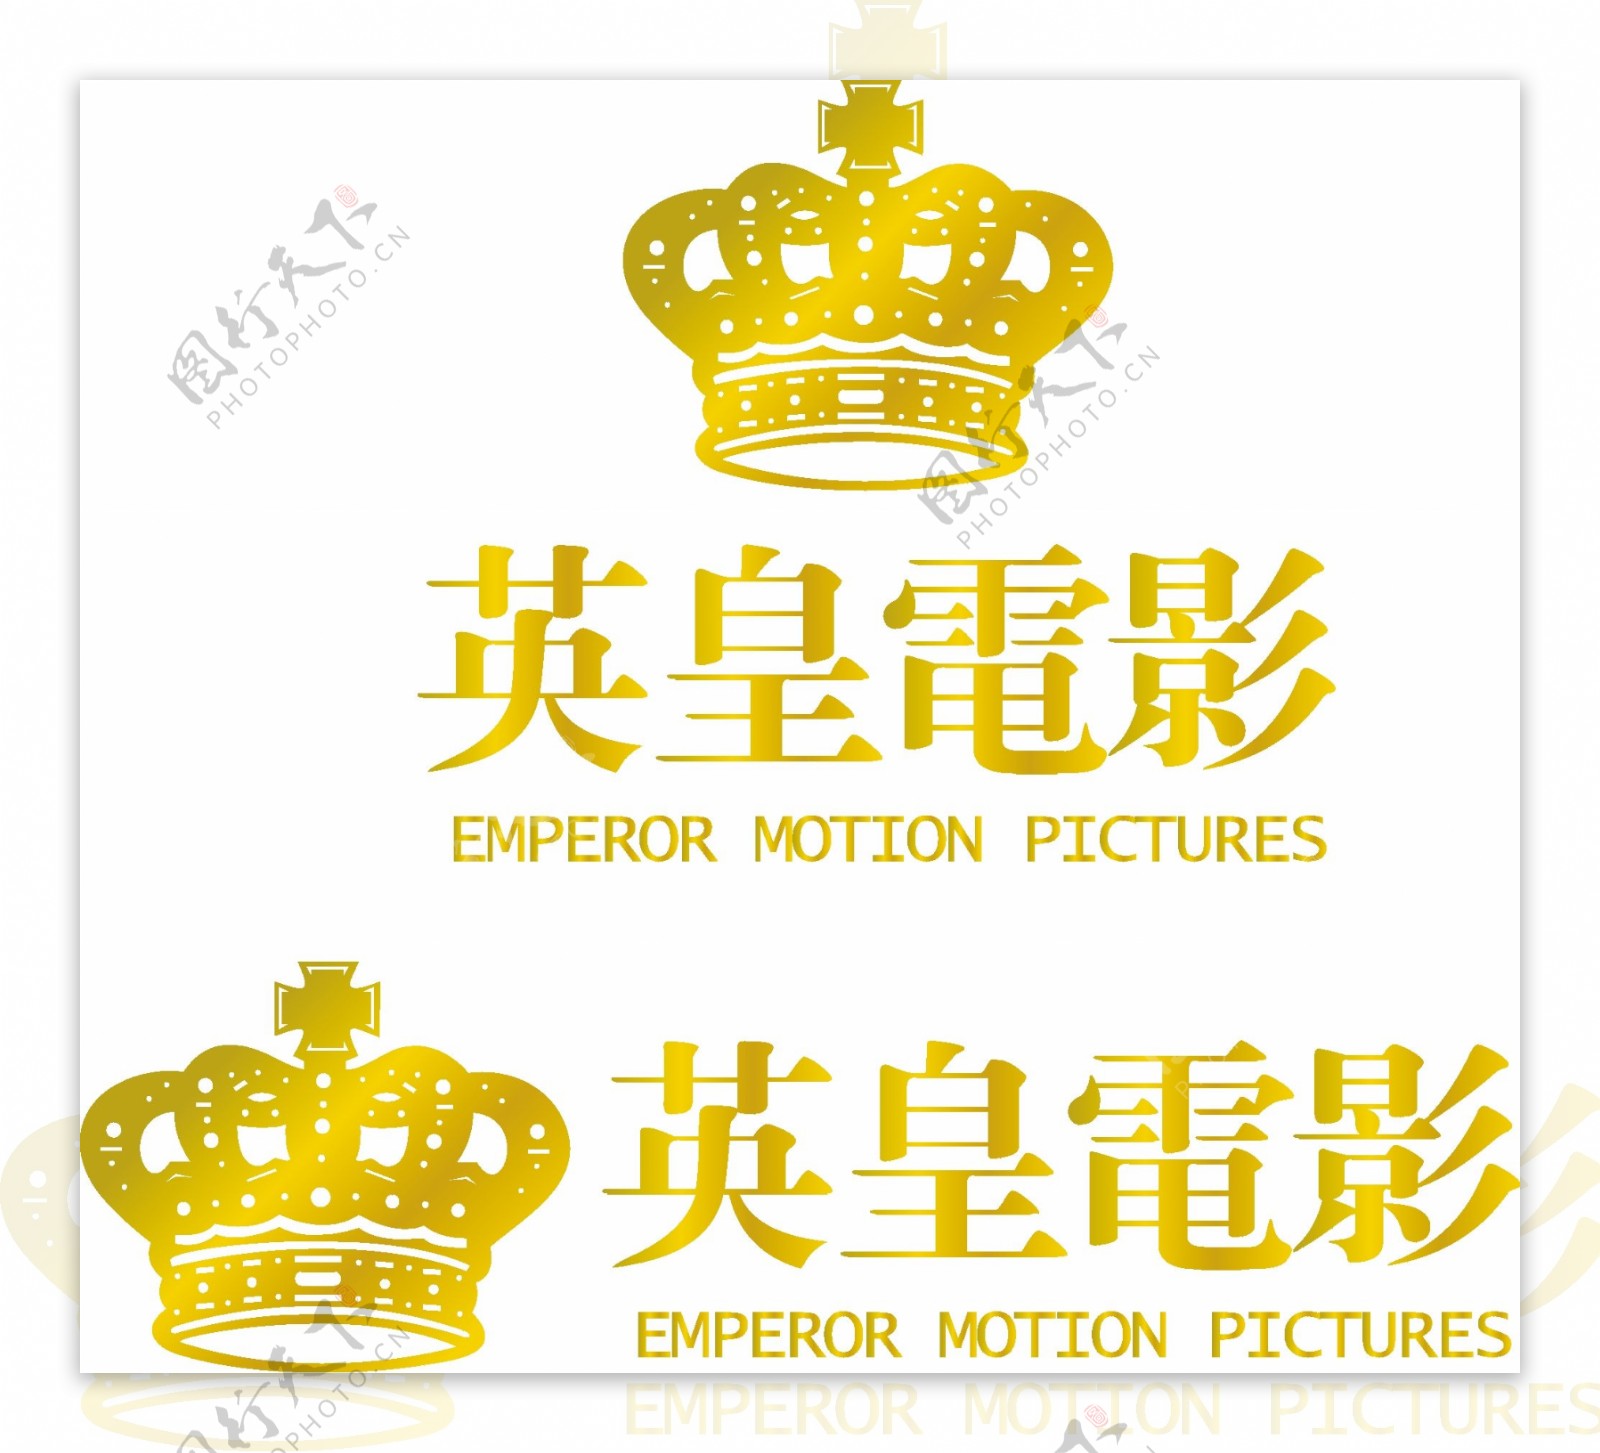 香港英皇电影公司标志图片